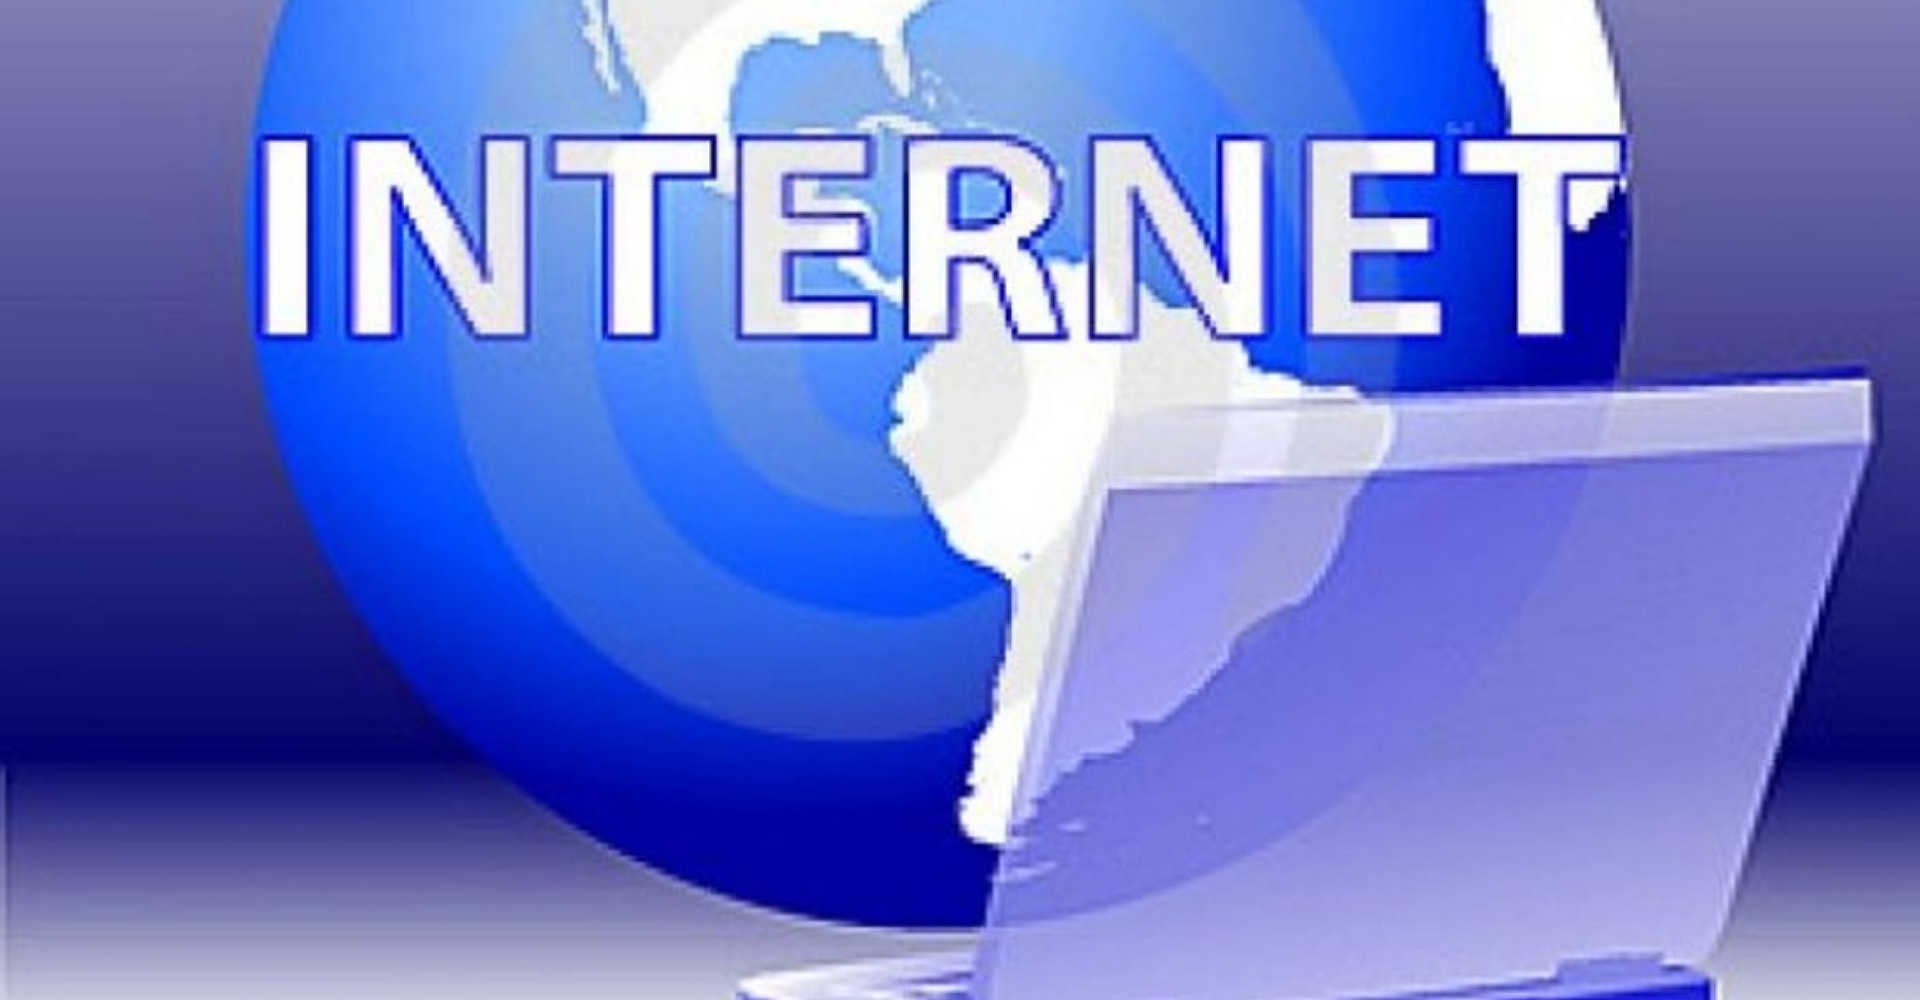 नेपाली आकाशमै इन्टरनेटको सुविधा